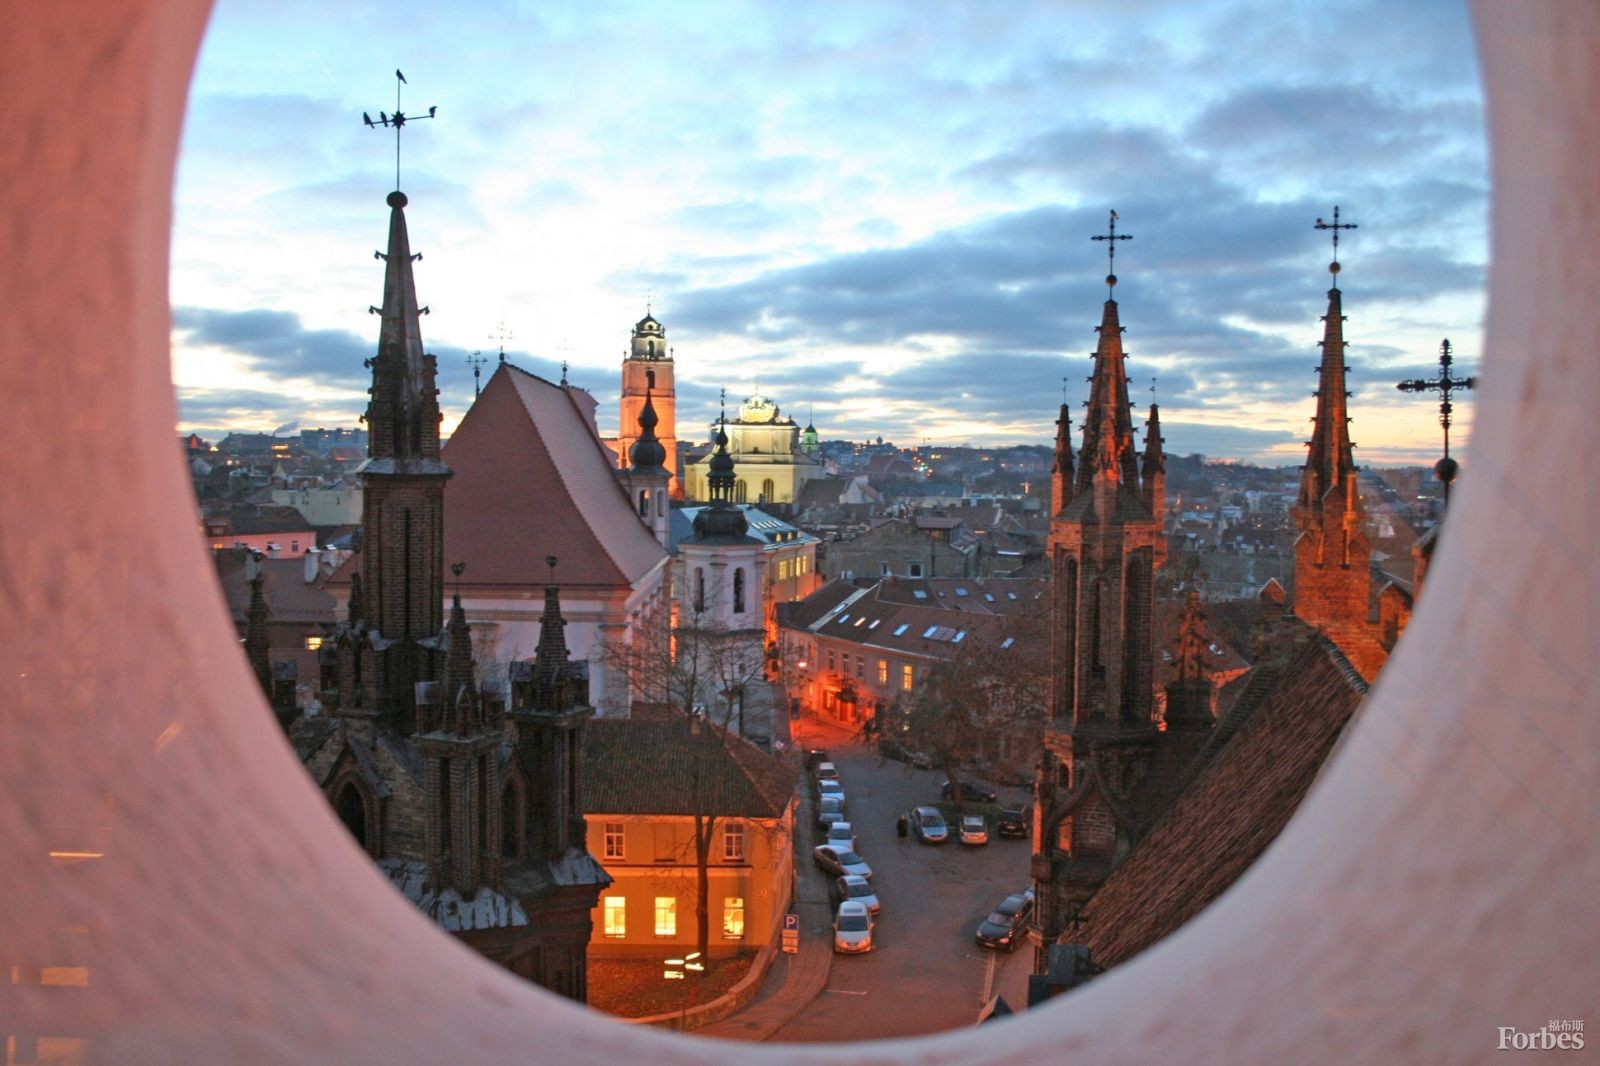 立陶宛的维尔纽斯老城区是东欧规模最大、最璀璨夺目的老城区。